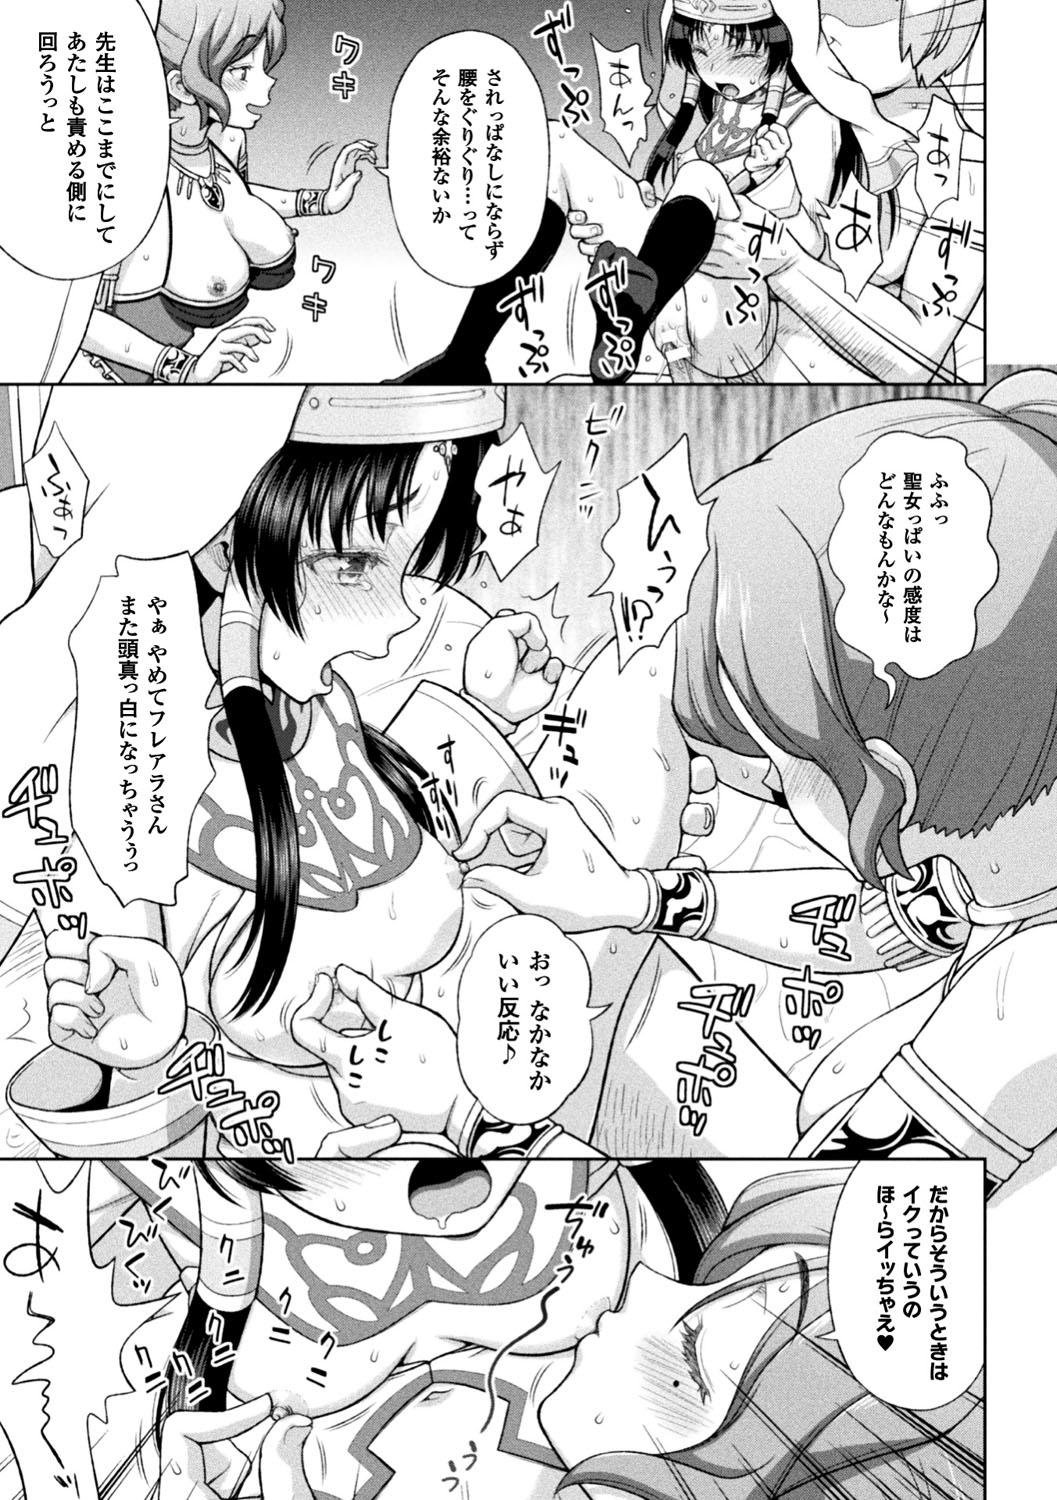 Seigi no Heroine Kangoku File Vol. 12 22